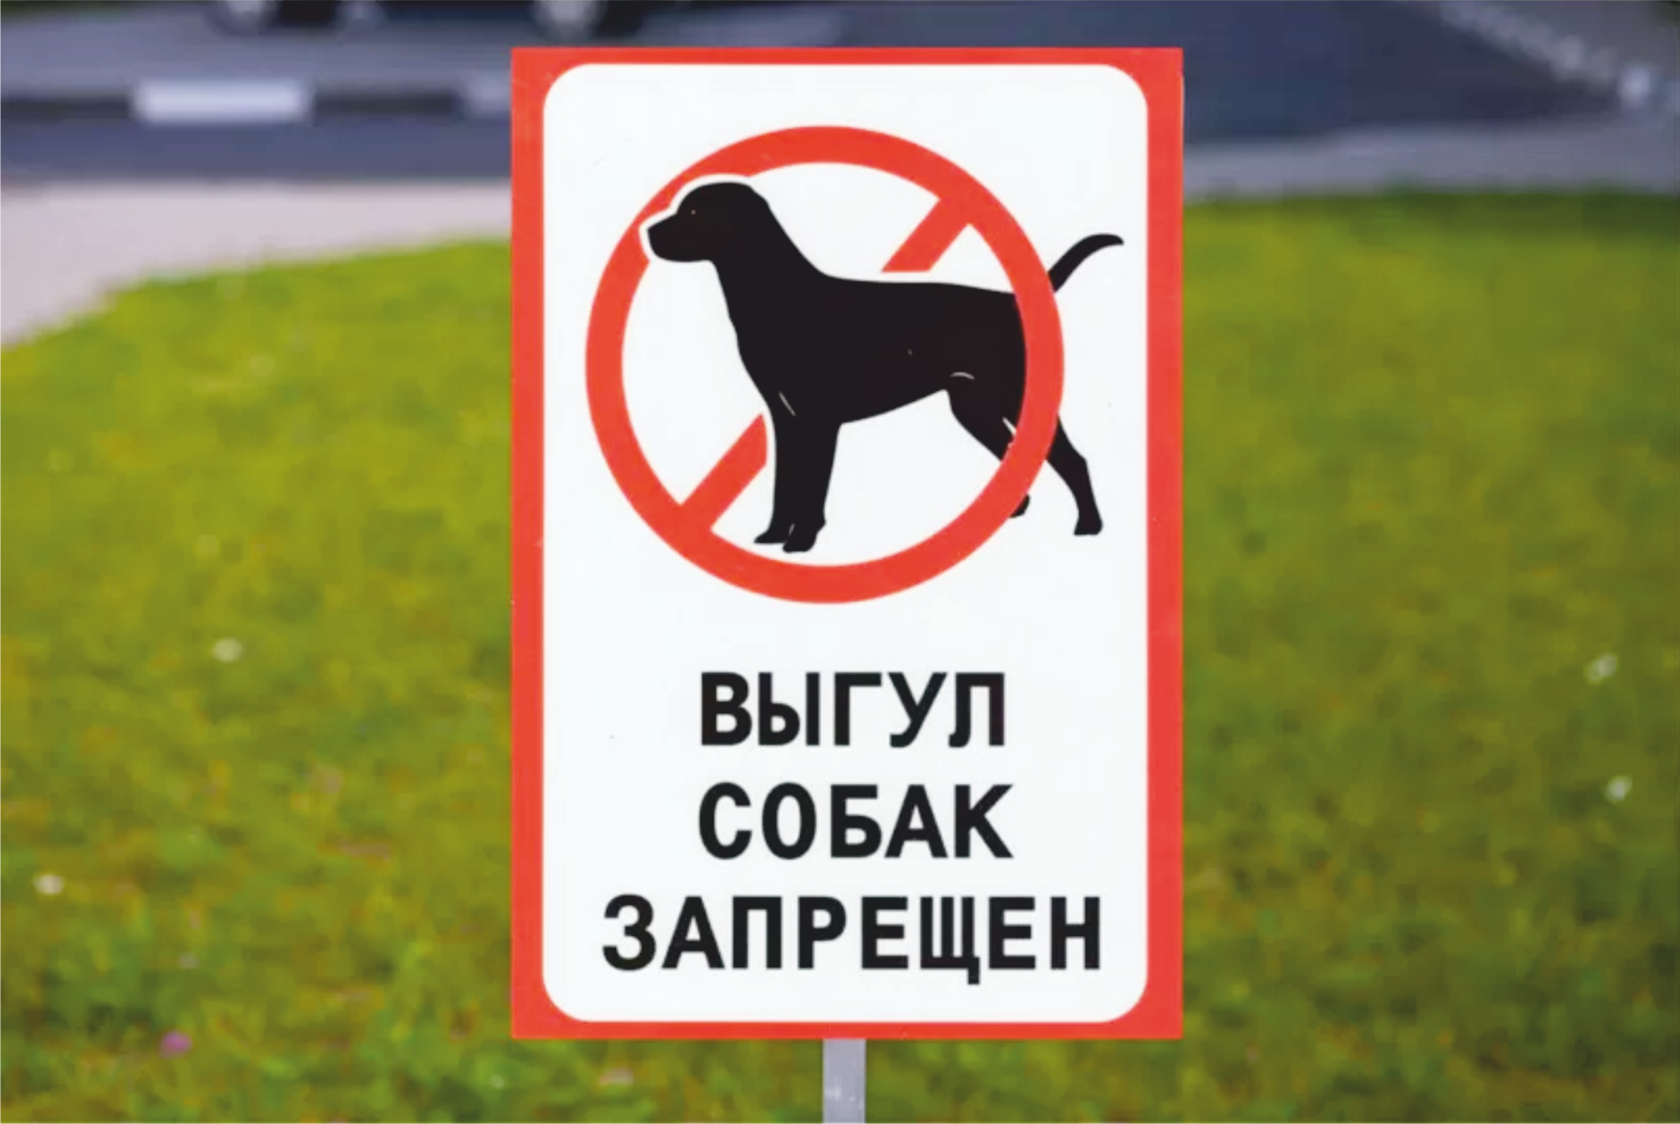 Таблички выгул собак запрещен